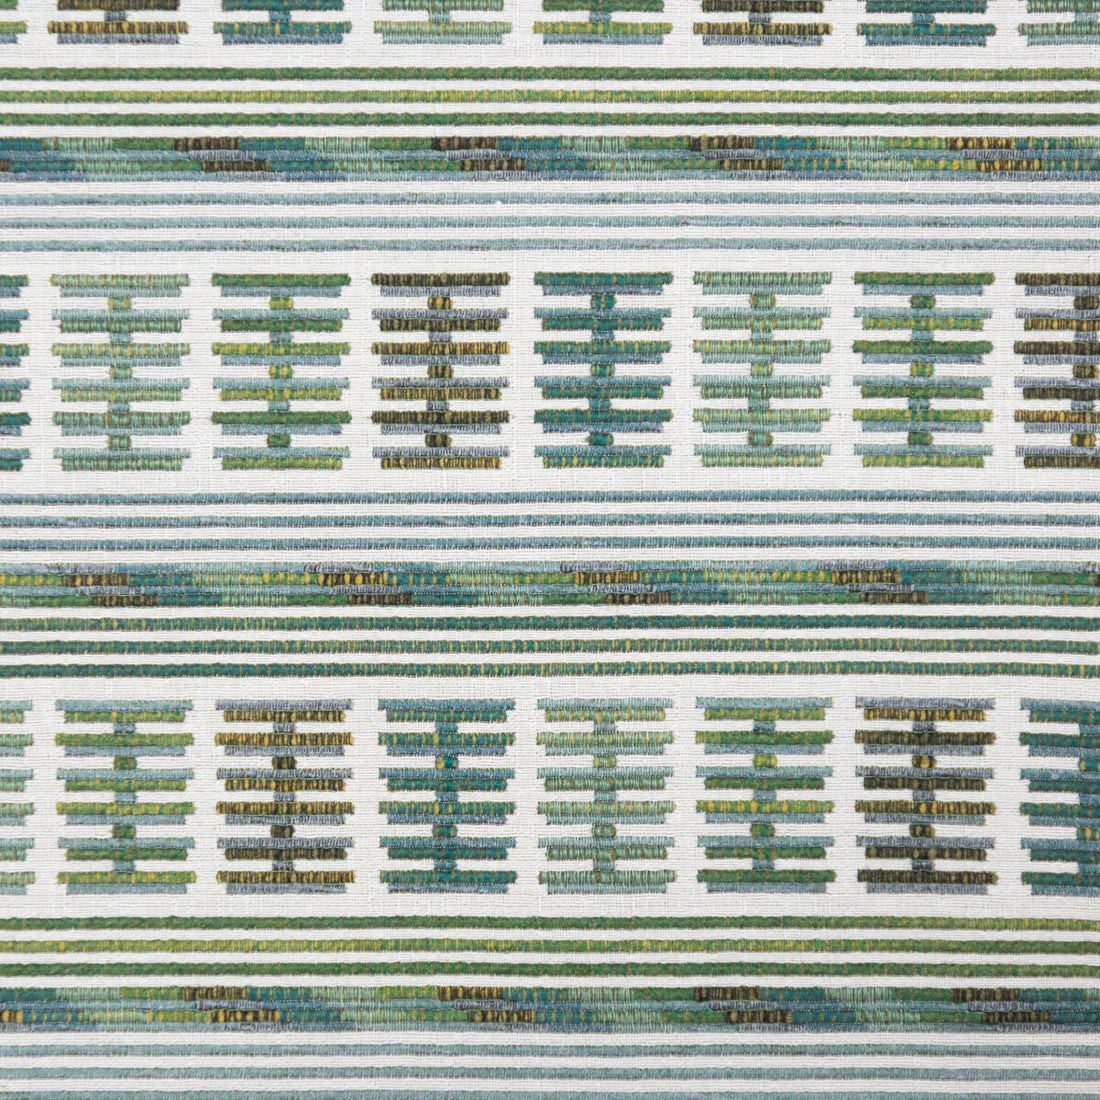 Toro Sentado fabric in verde color - pattern GDT5657.004.0 - by Gaston y Daniela in the Gaston Rio Grande collection